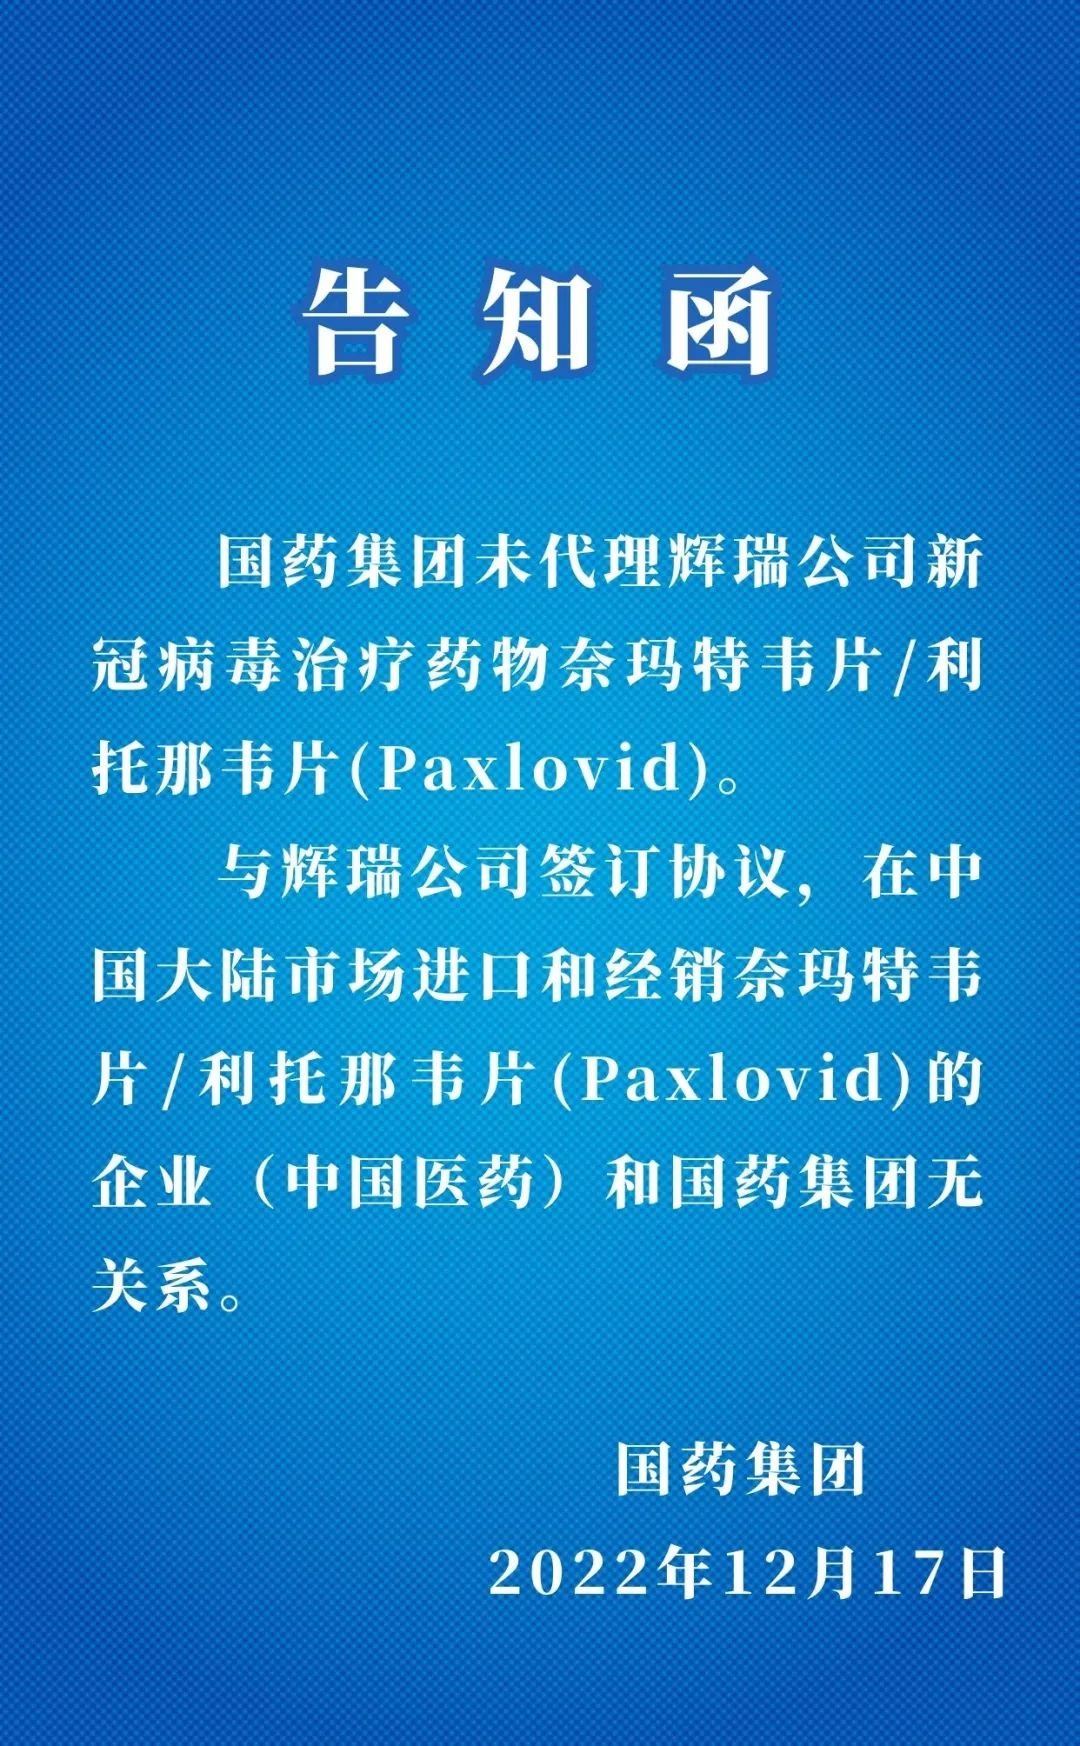 31省区市新增本土确诊病例3例 在黑龙江和四川